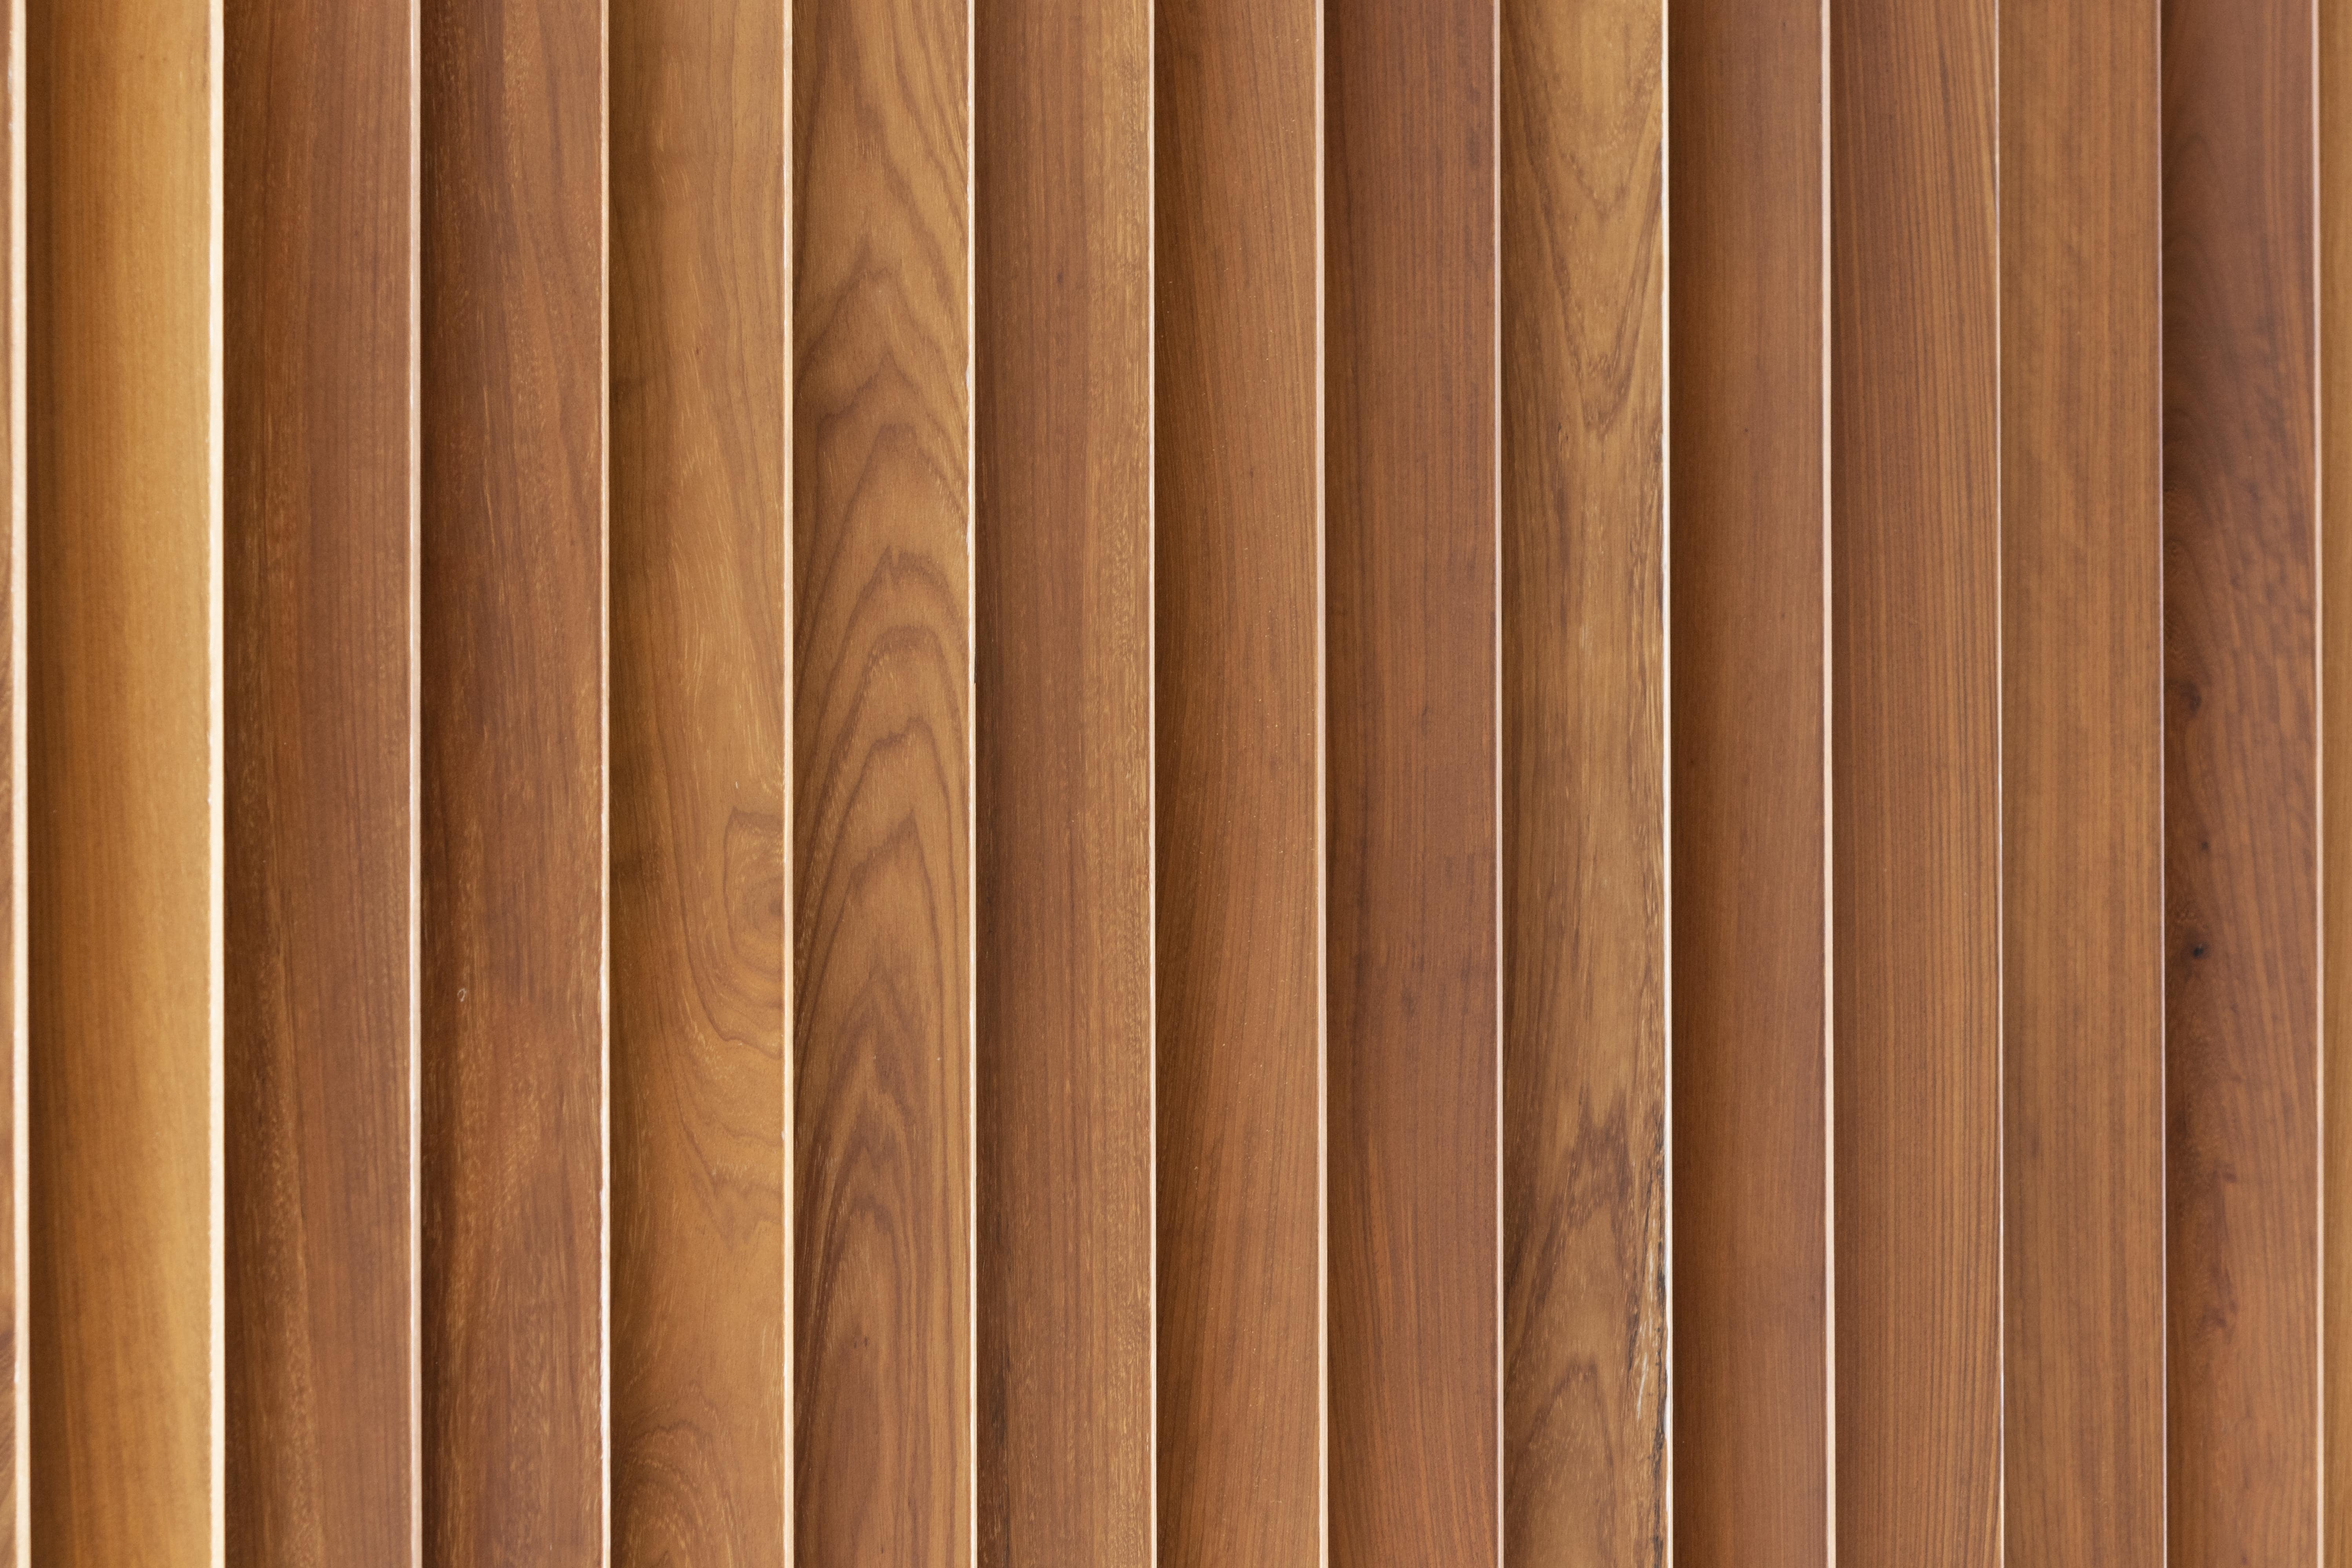 Le bois sipo a un prix au m2 qui change selon l’utilisation que vous souhaitez en faire